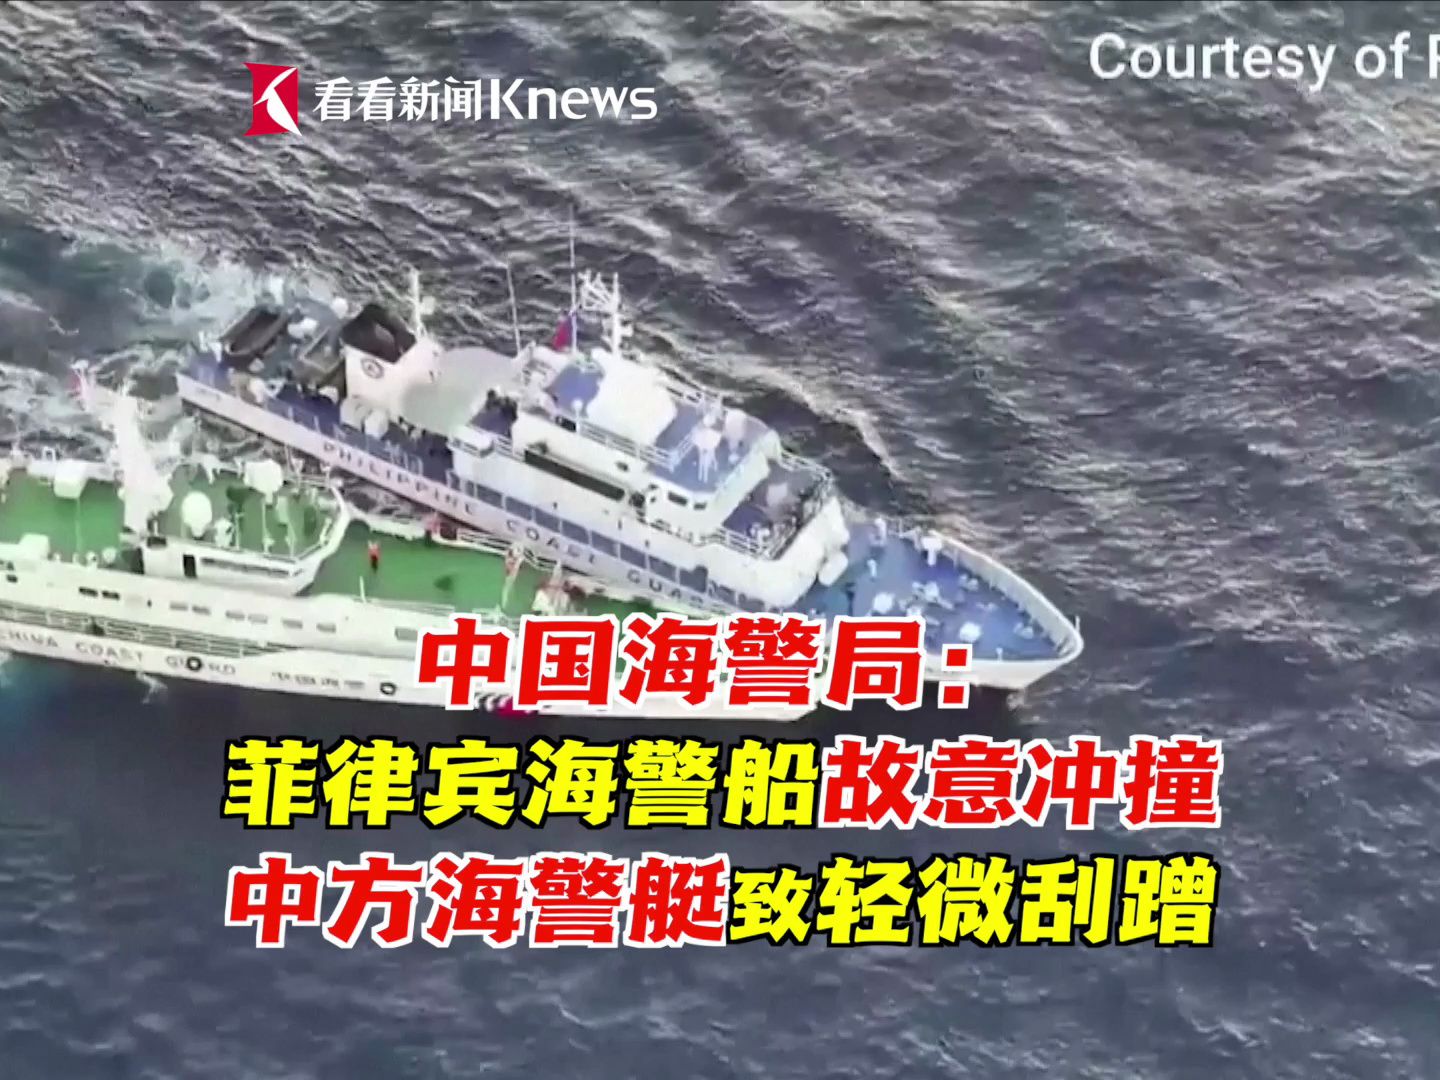 中方：菲海警船故意冲撞中方海警艇致轻微刮蹭